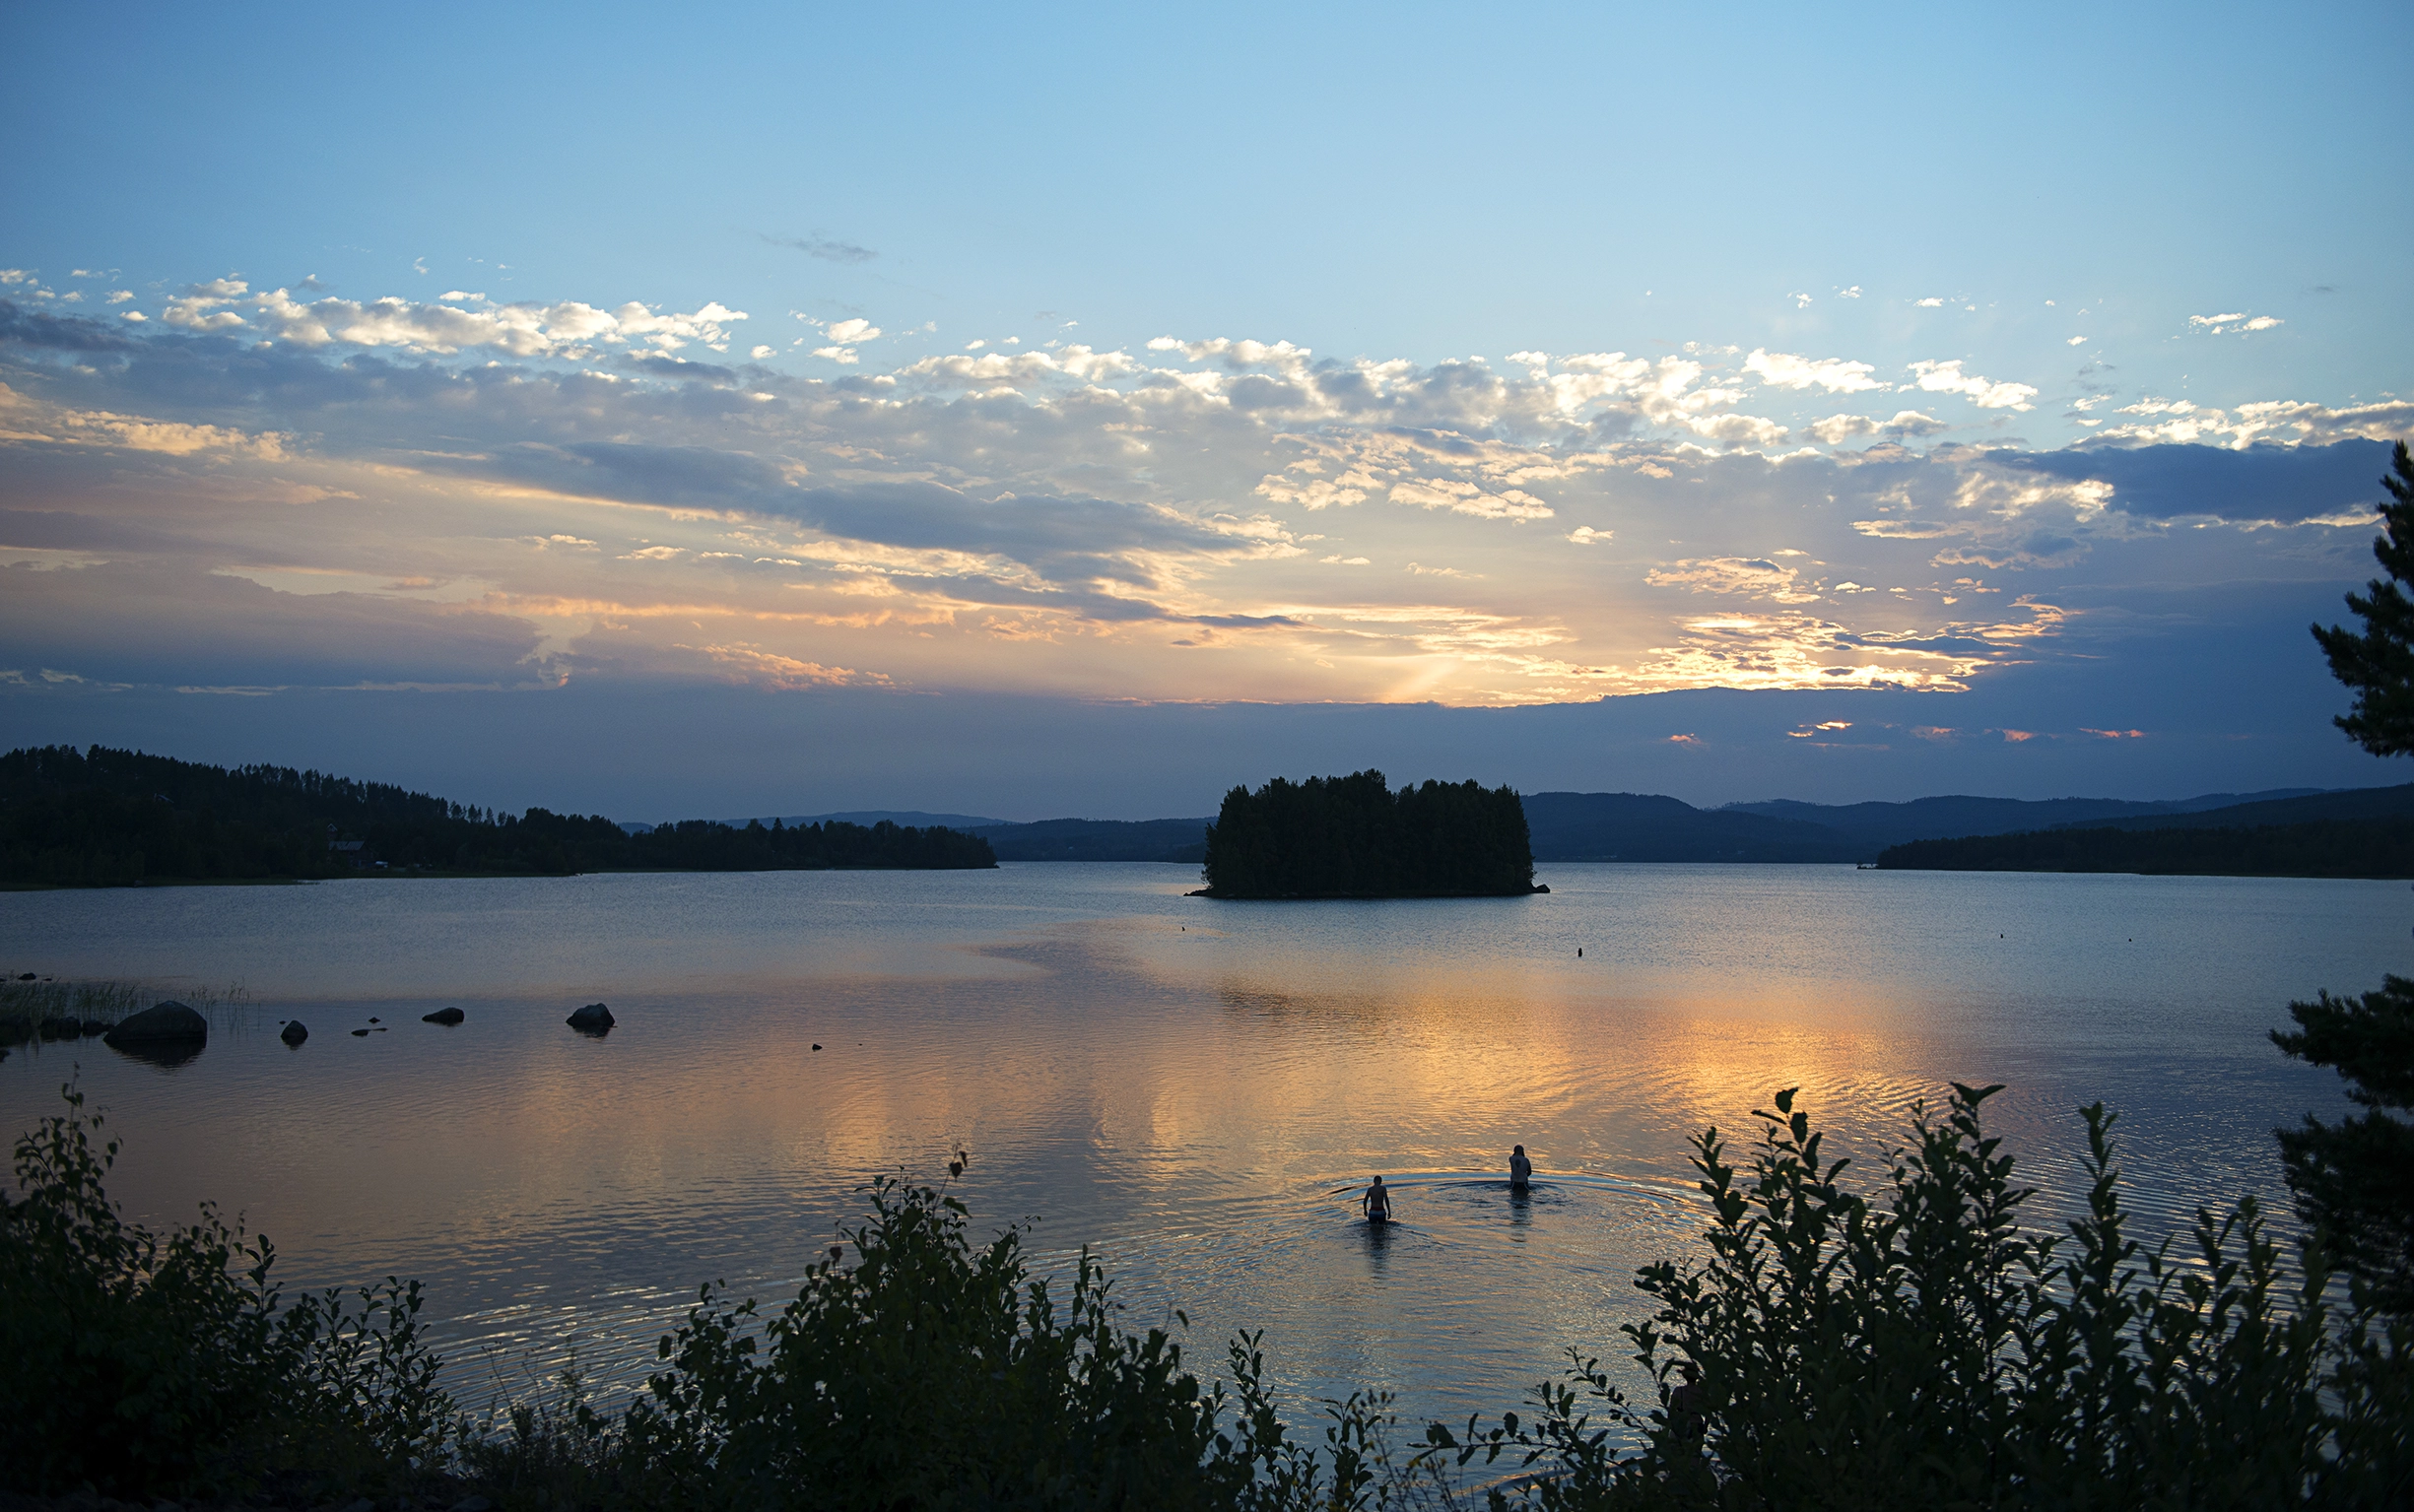 Två stycken personer badar i en sjö omgiven av grönska i solnedgången